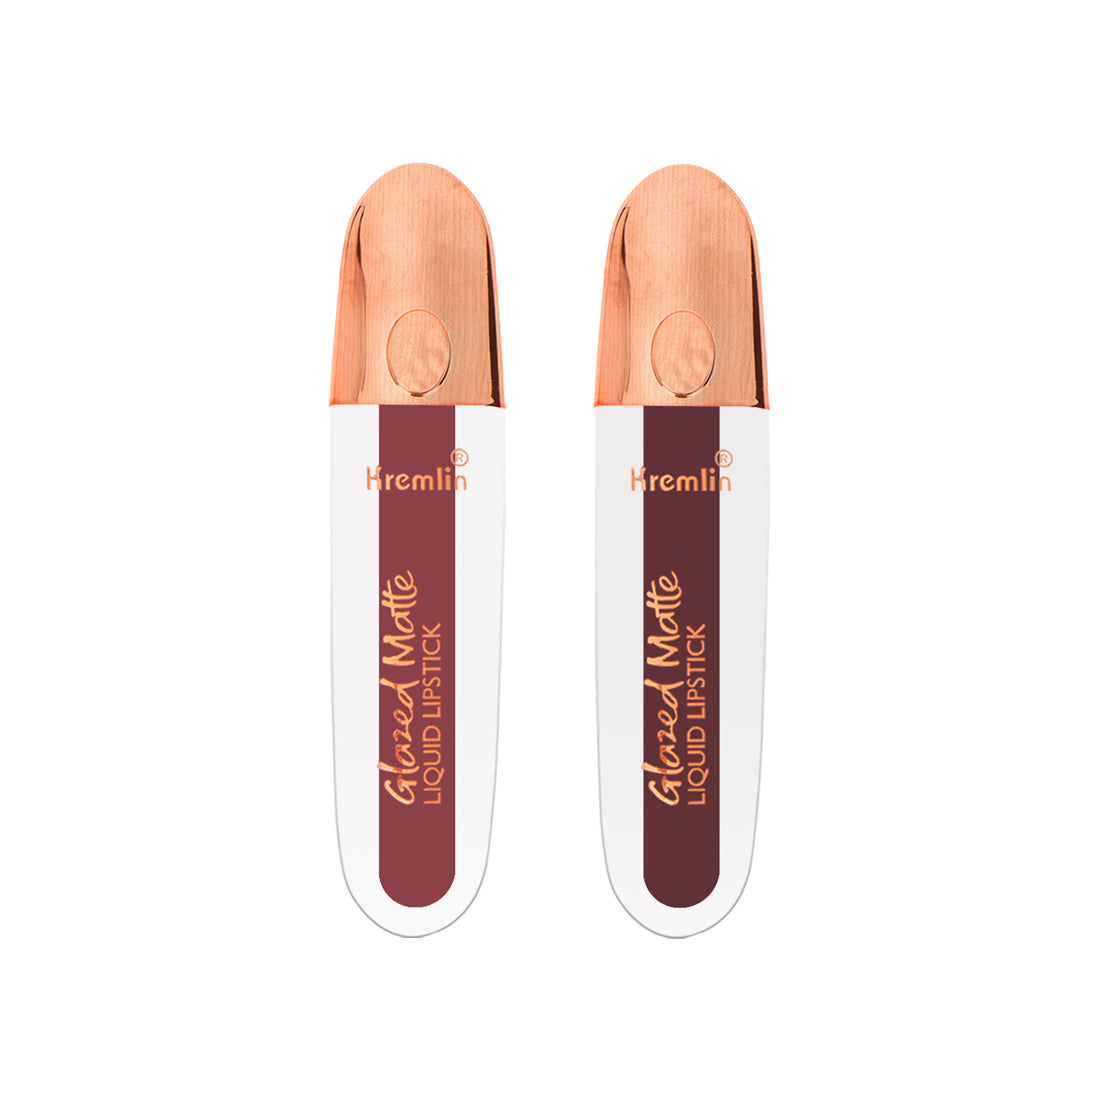 Kremlin Glazed Matte Liquid Lipstick Lips Pack of 2 (Virgin, Sizzling Slayer)